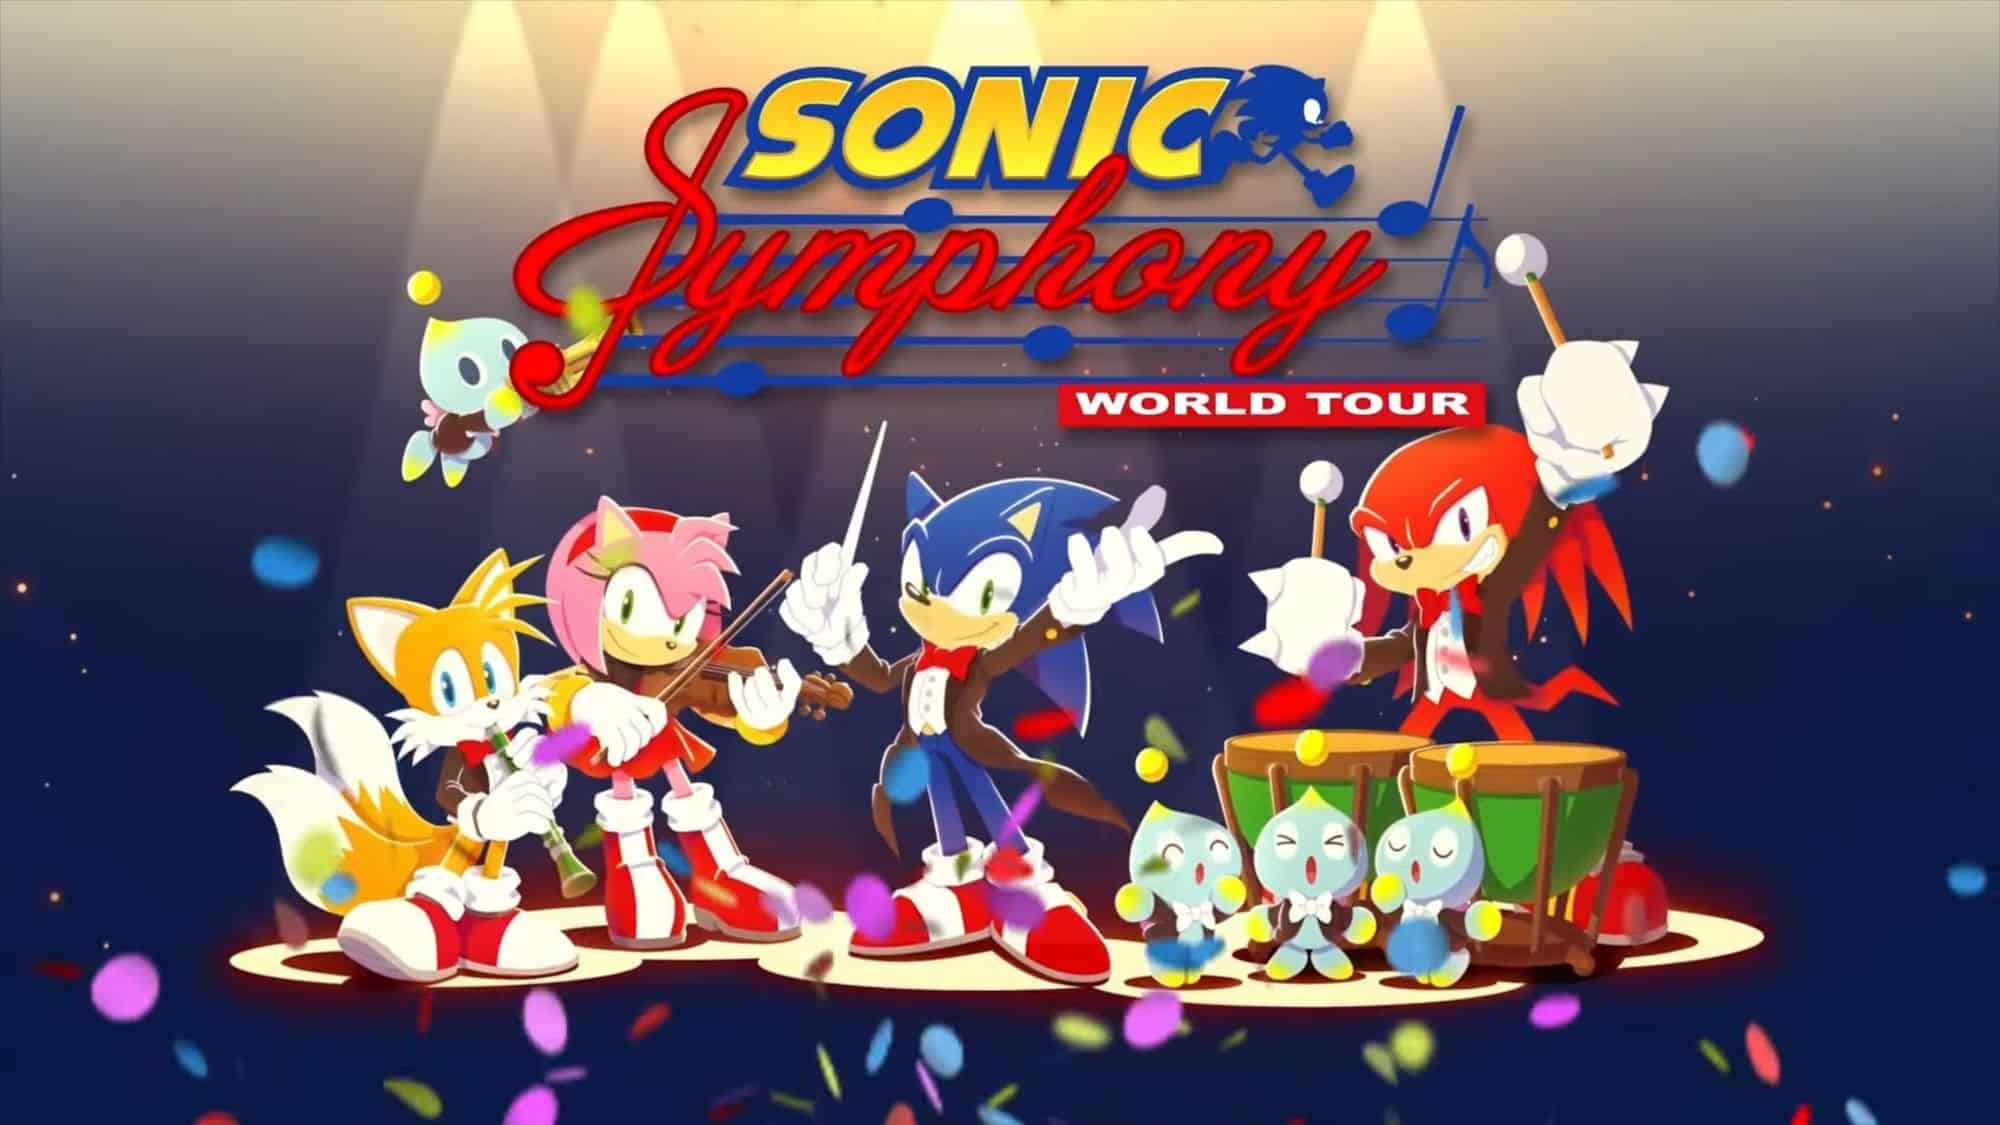 Sonic Symphony World Tour Confira as apresentações em SP